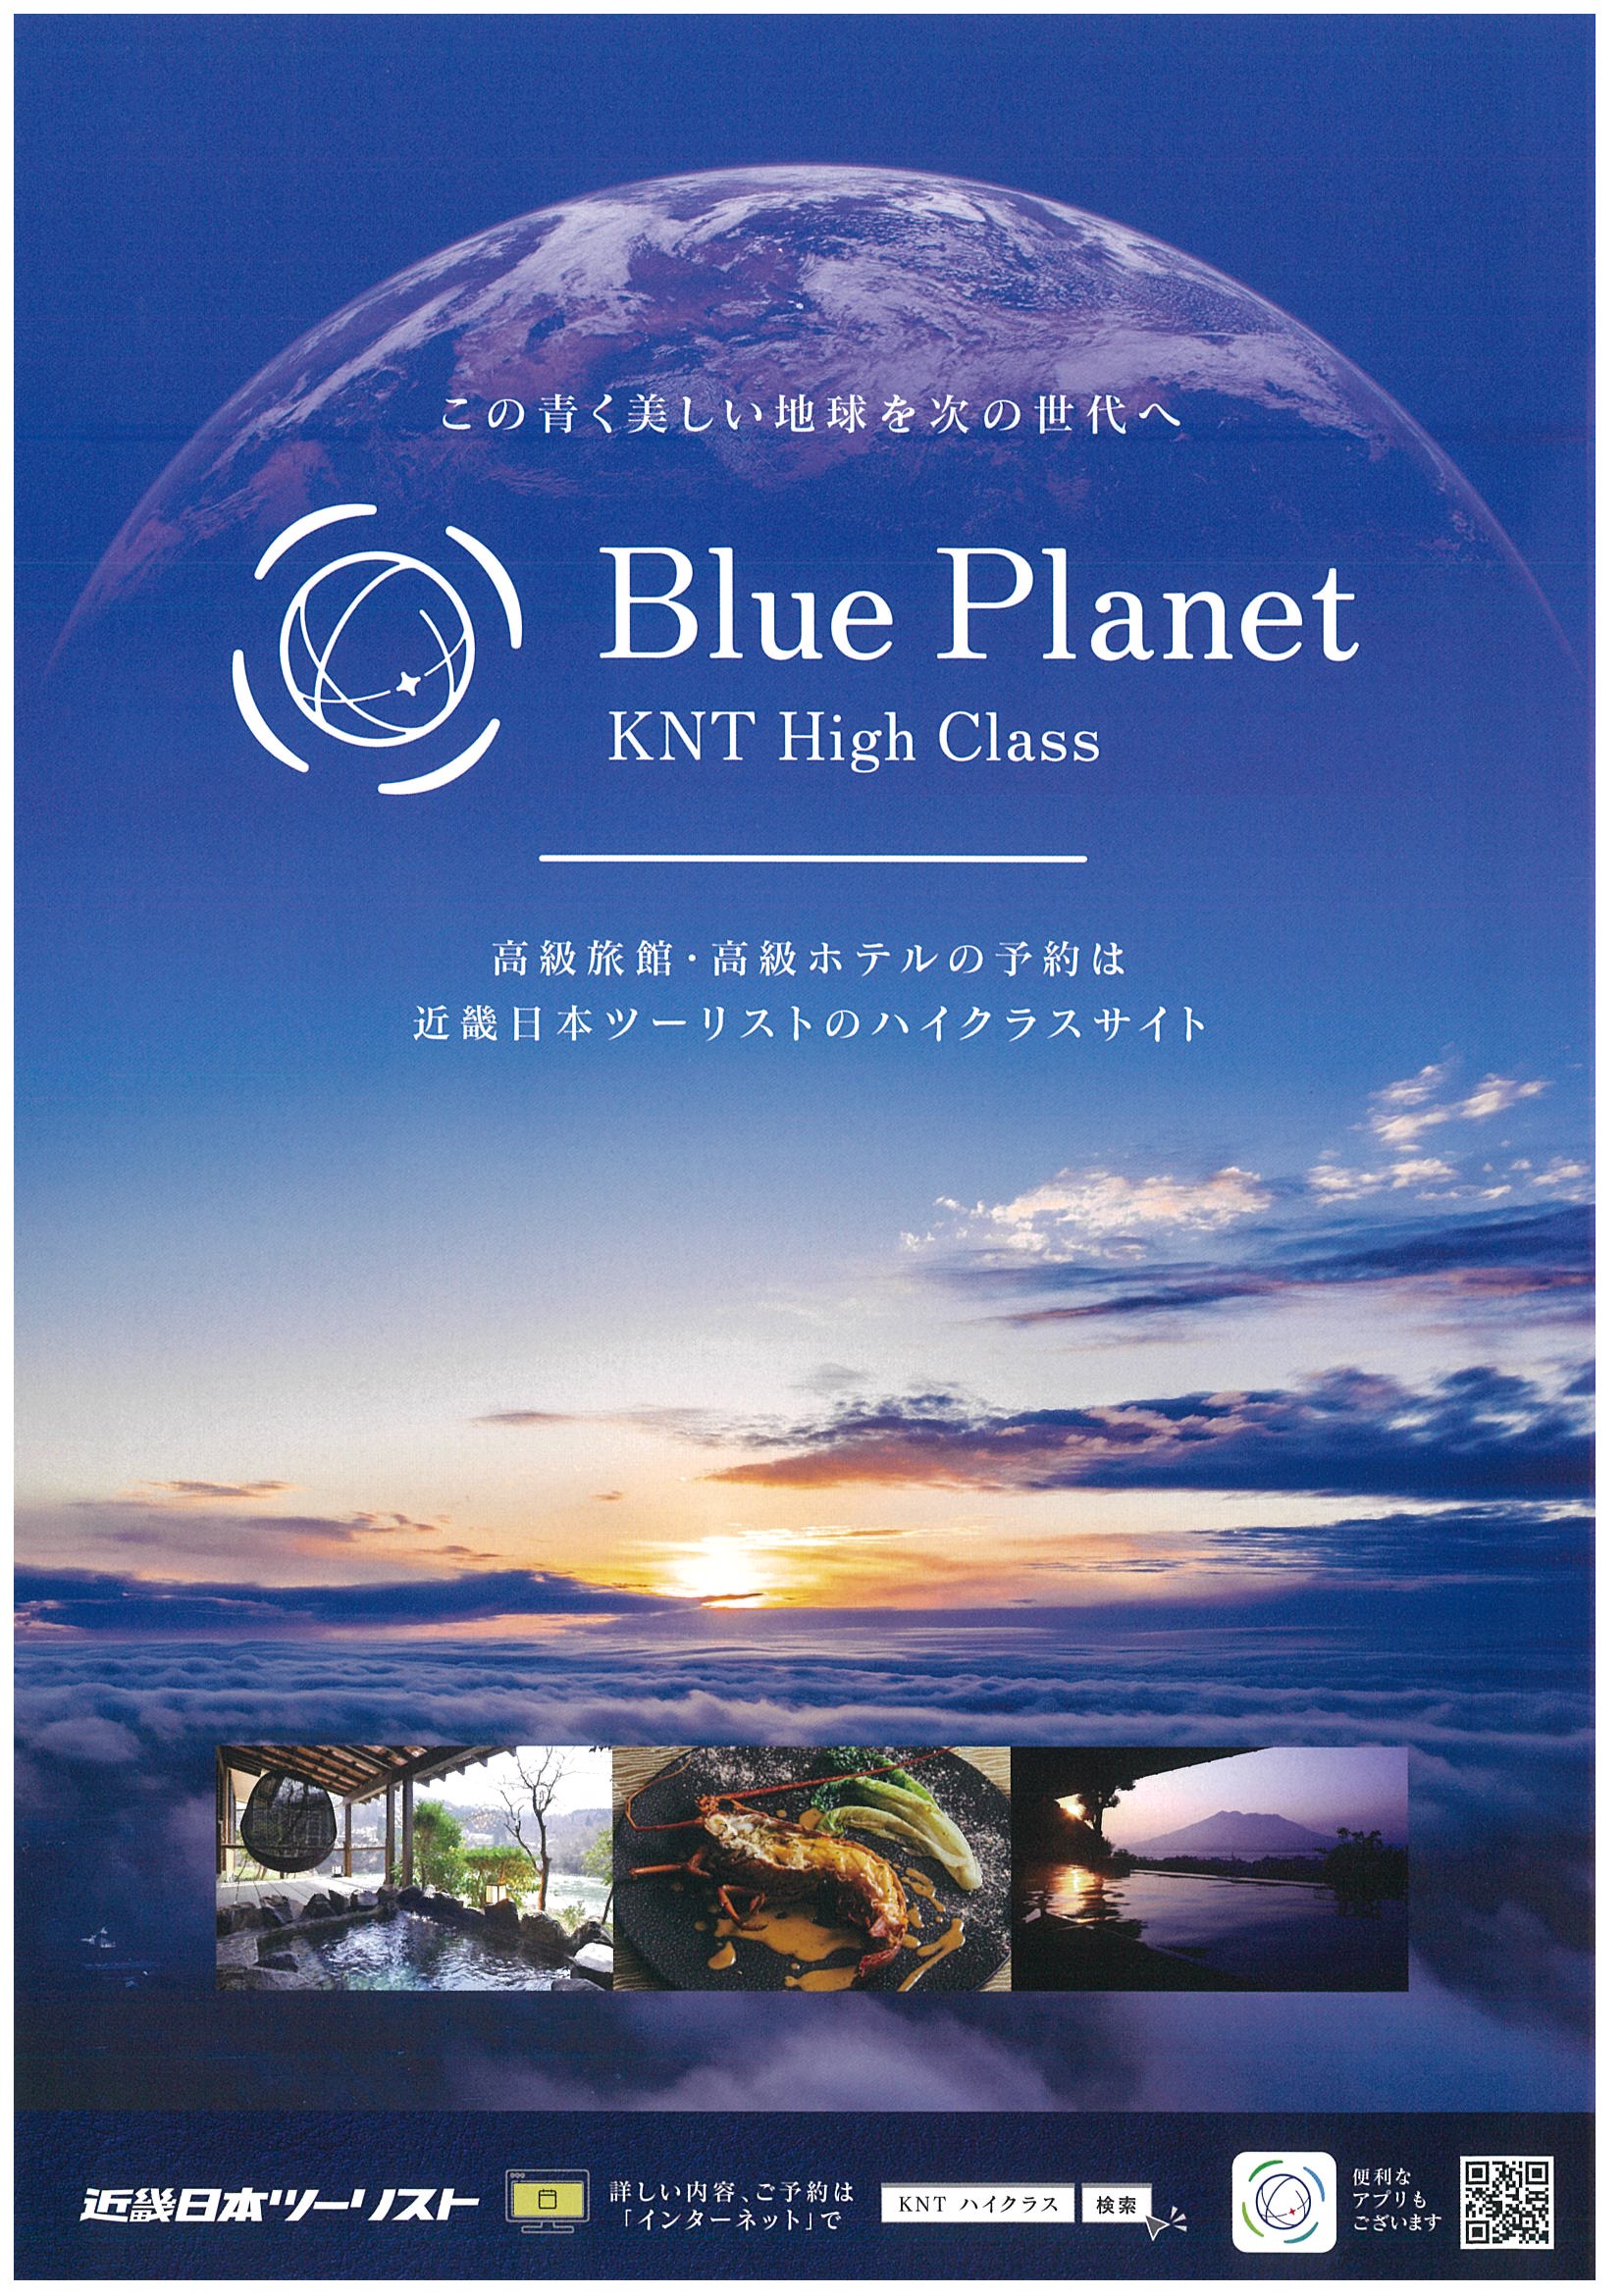 Blue Planet KNT High Class